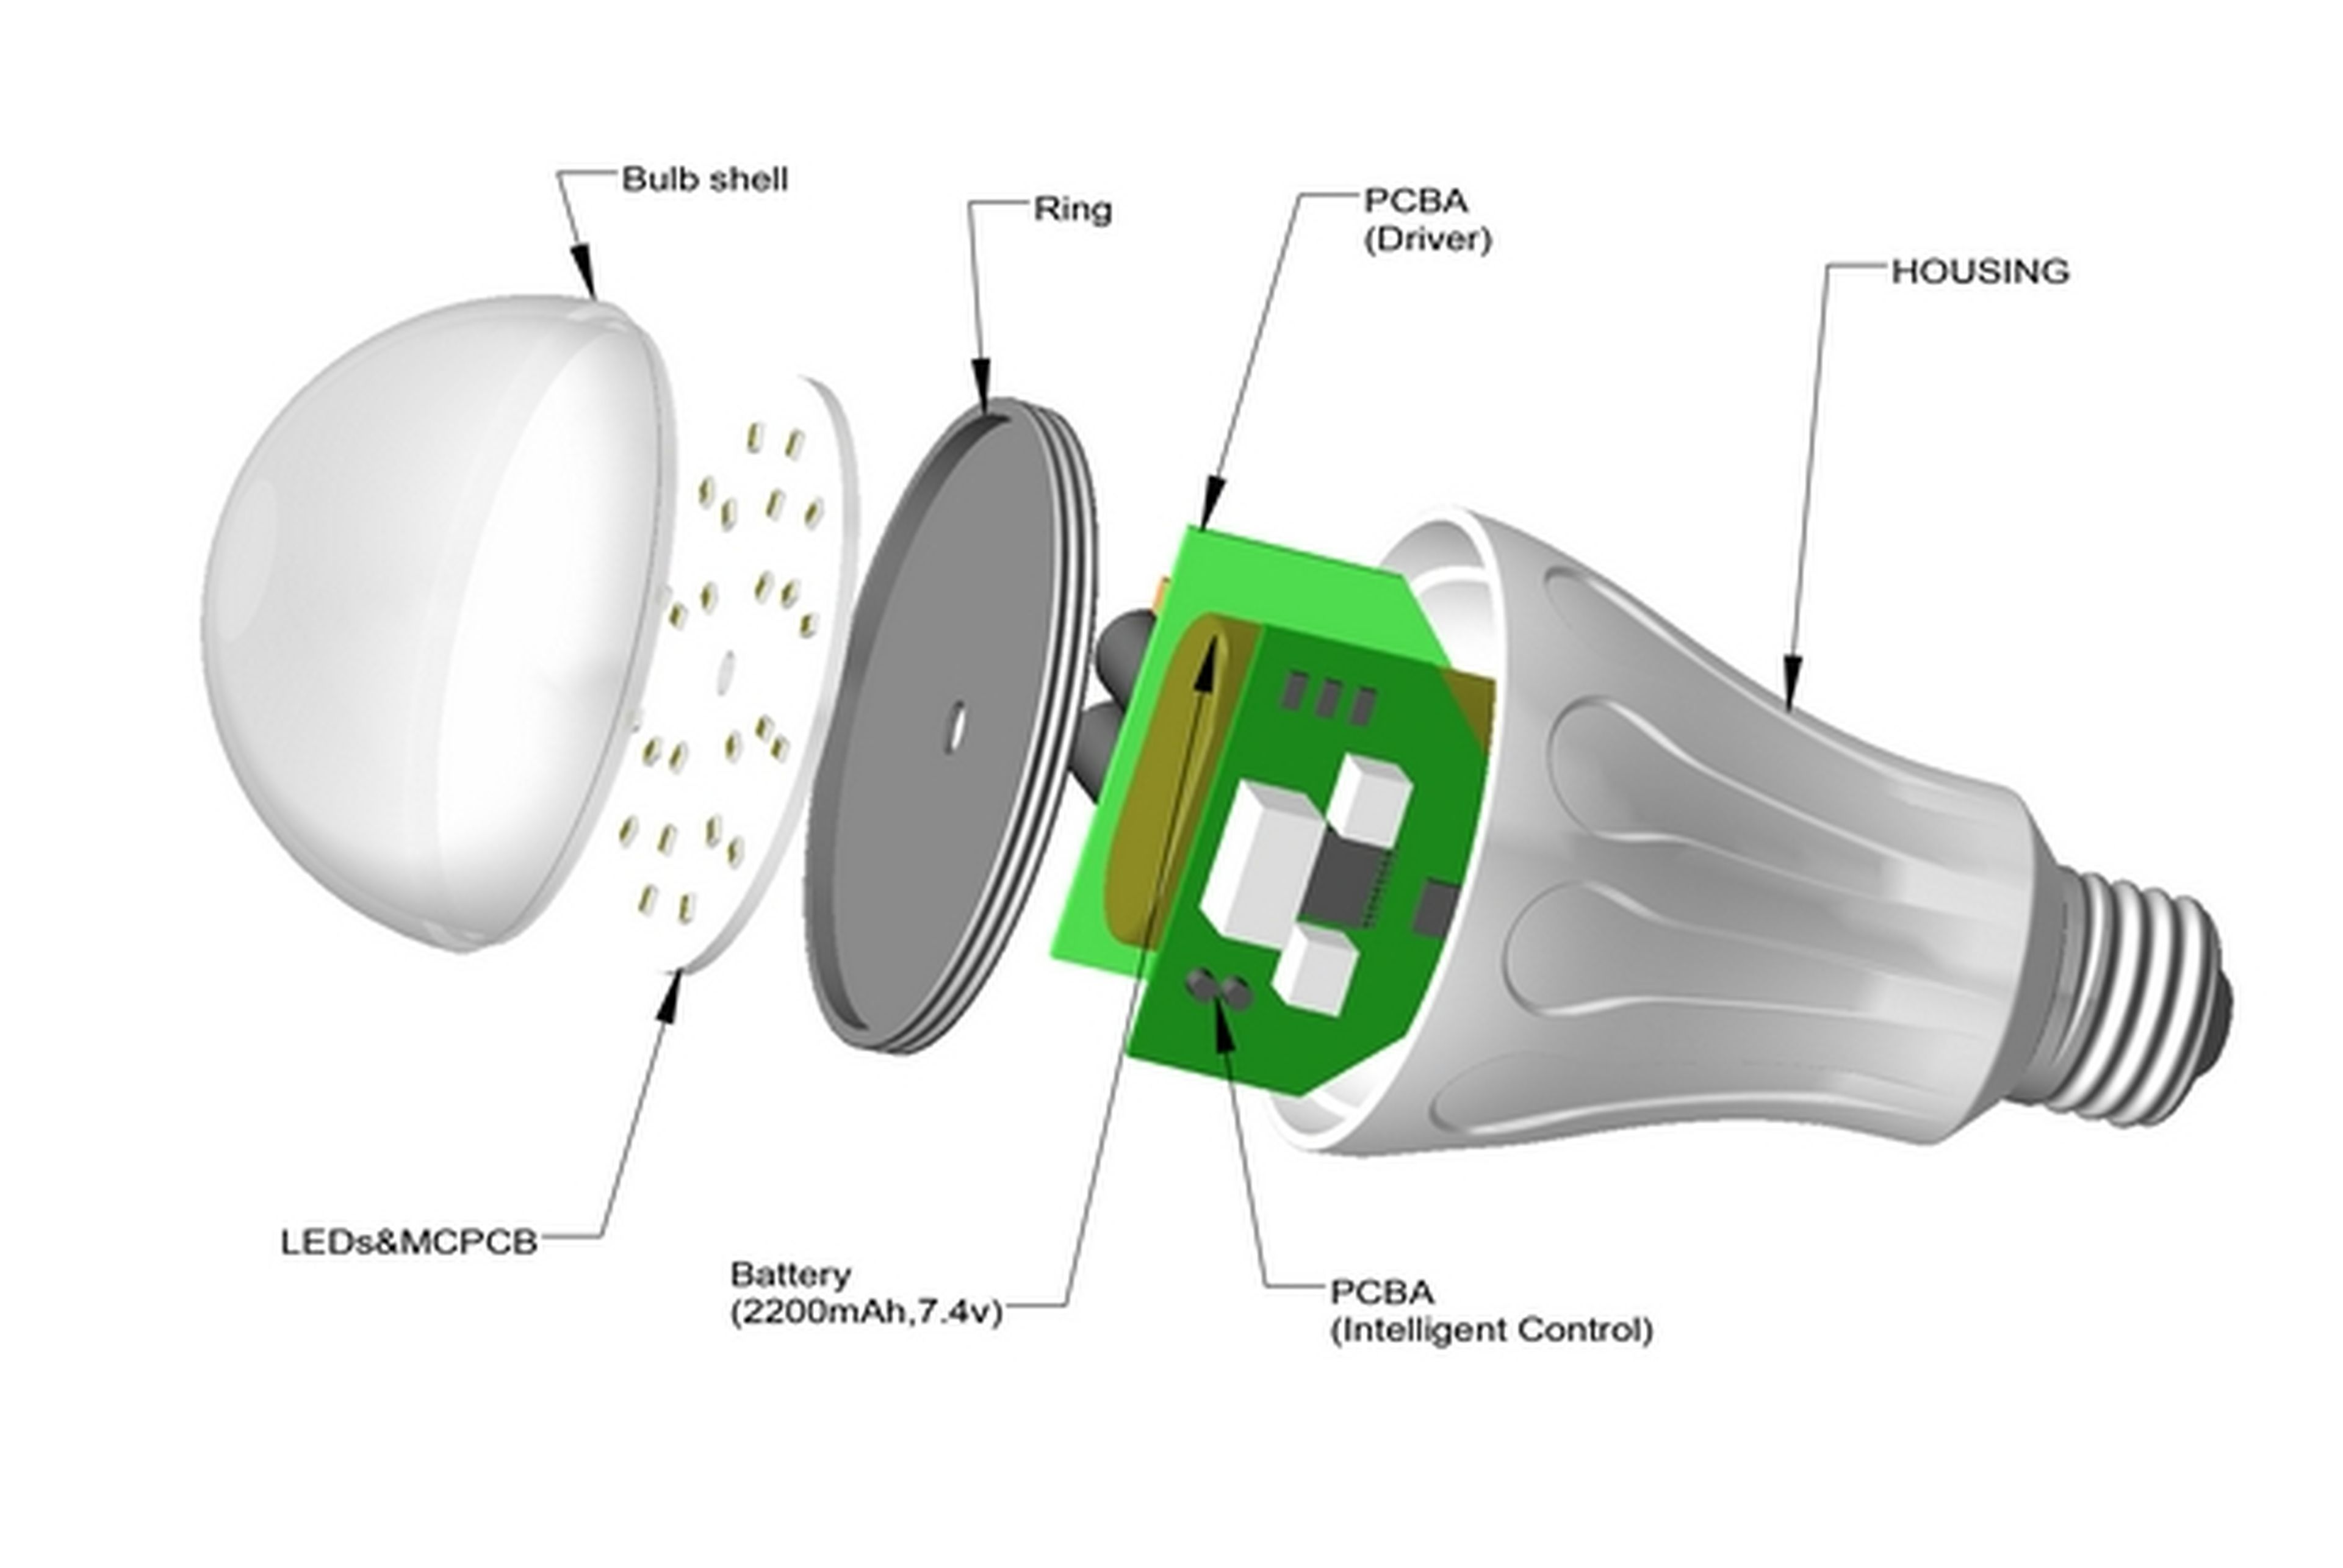 Bombillas LED: tipos y claves para elegir bien y ahorrar en tu factura de la luz